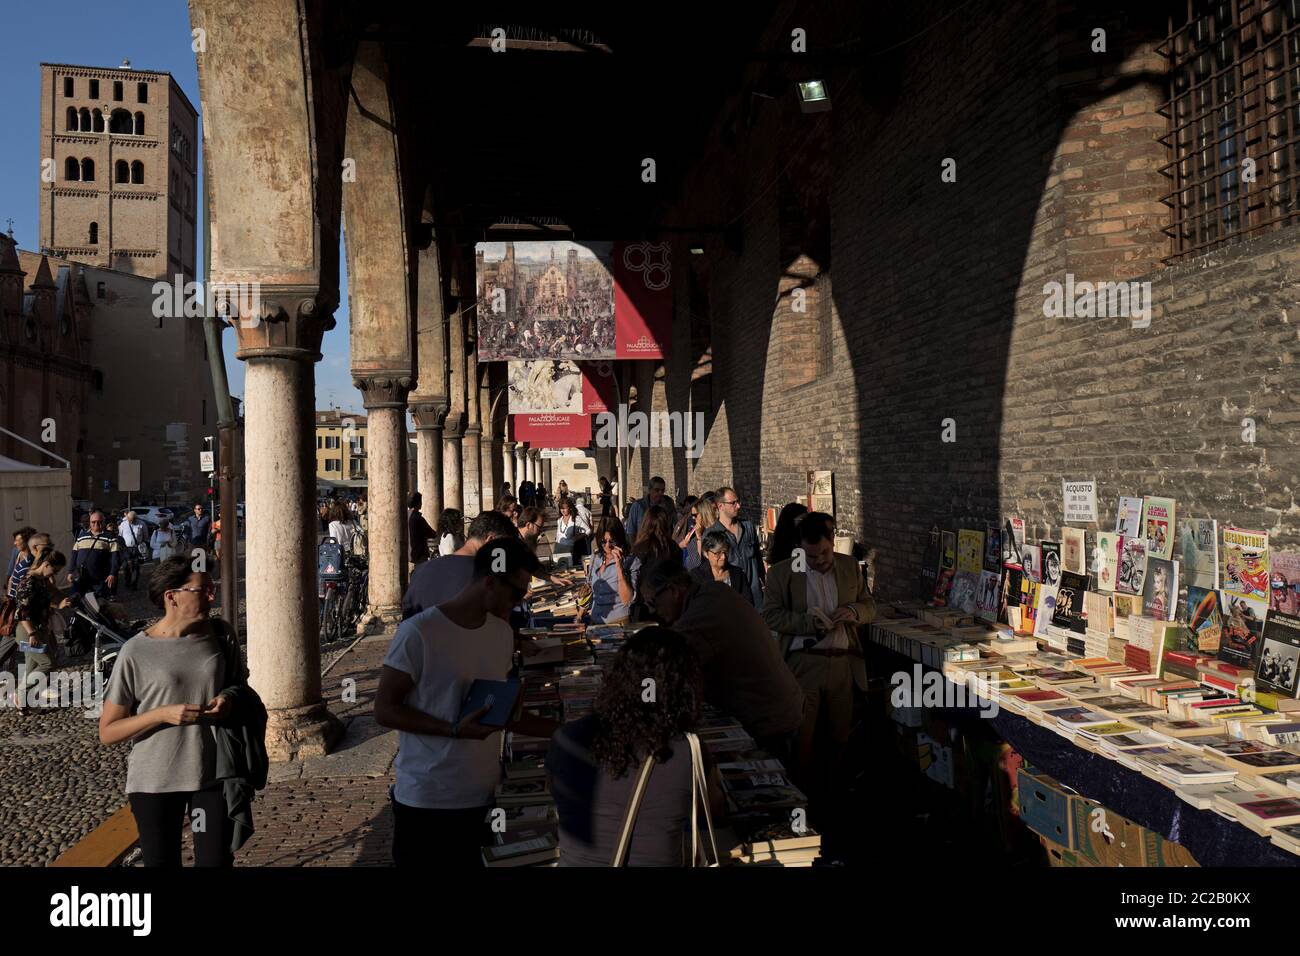 Mercato del libro sotto un antico porticato della piazza medievale di Sordello, durante il Festival Internazionale della Letteratura Mantova, a Mantova. Foto Stock